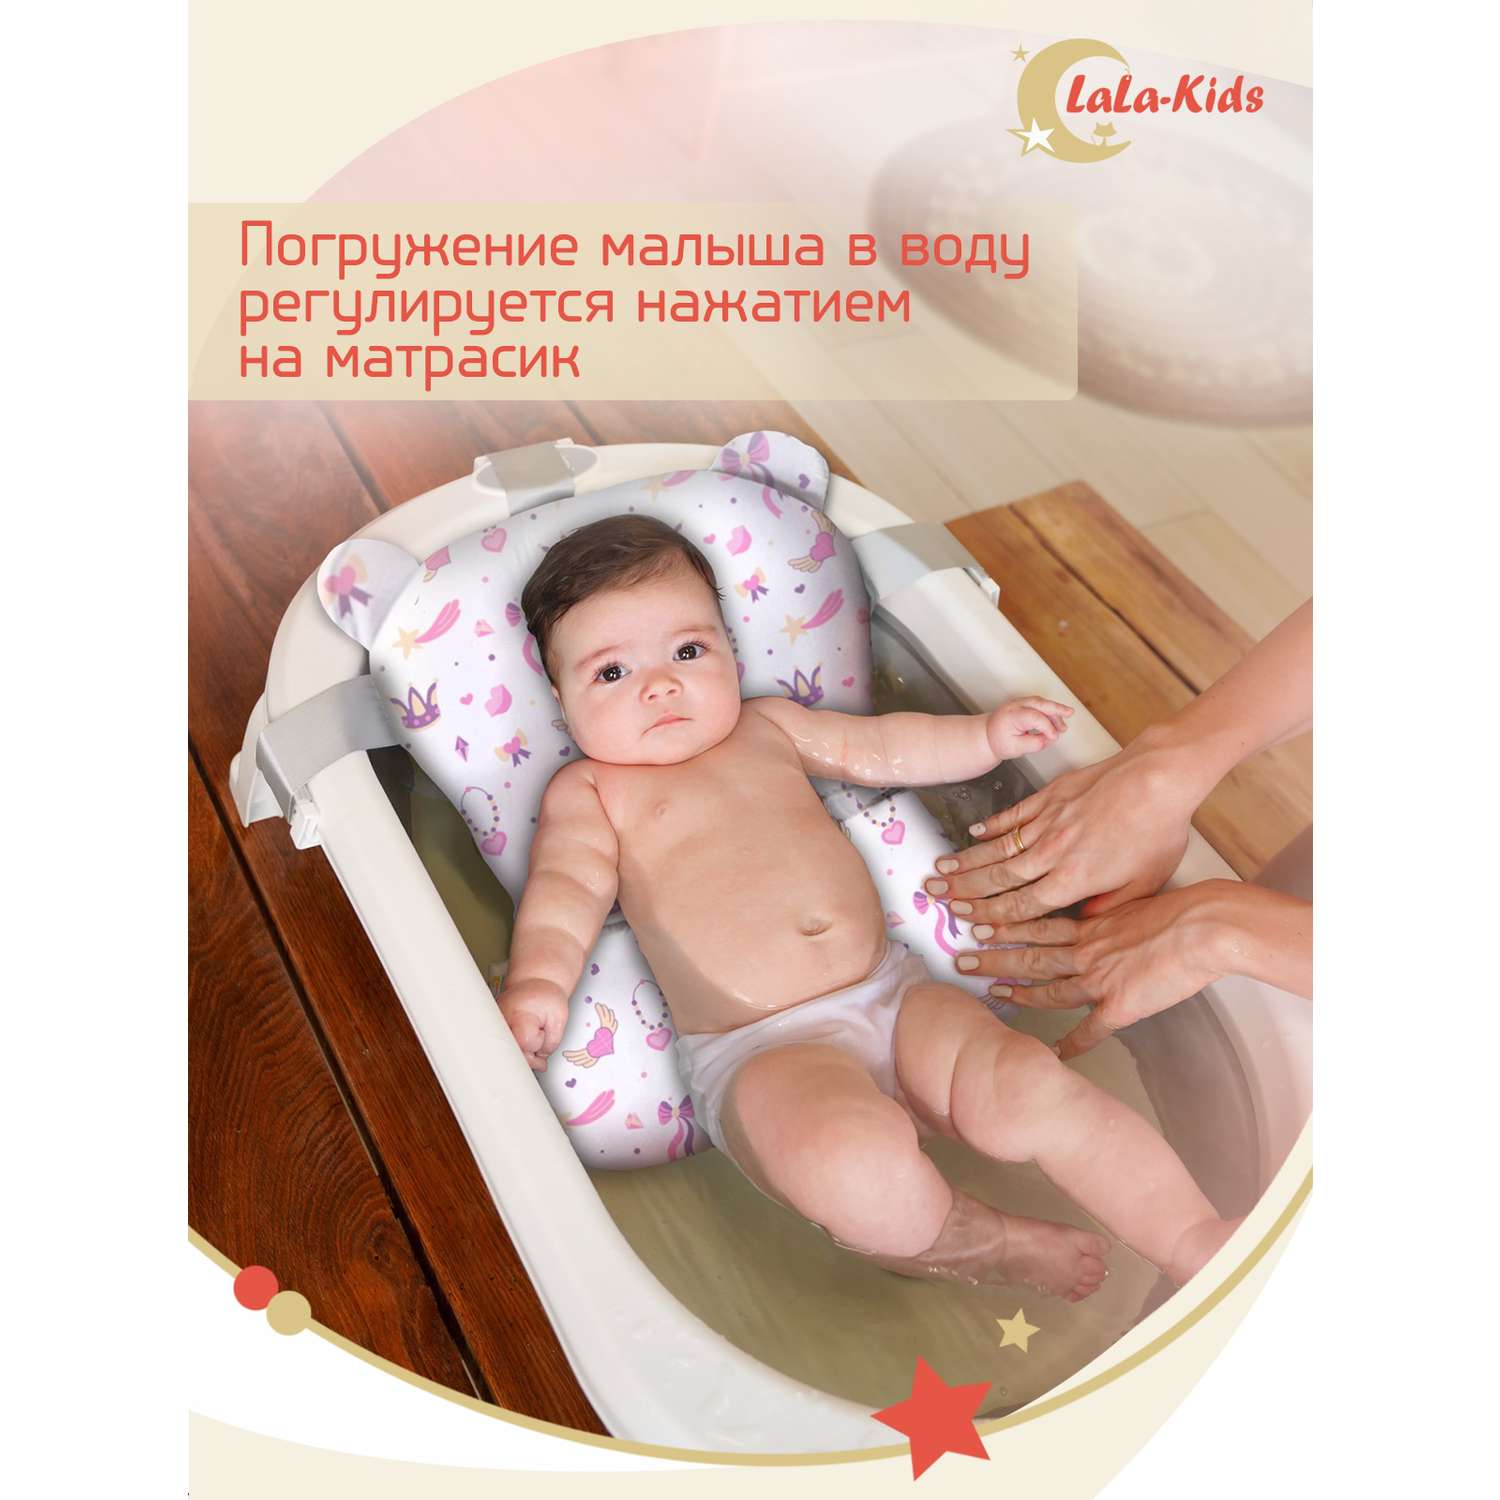 Складная ванночка LaLa-Kids для купания новорожденных с матрасиком в комплекте - фото 19